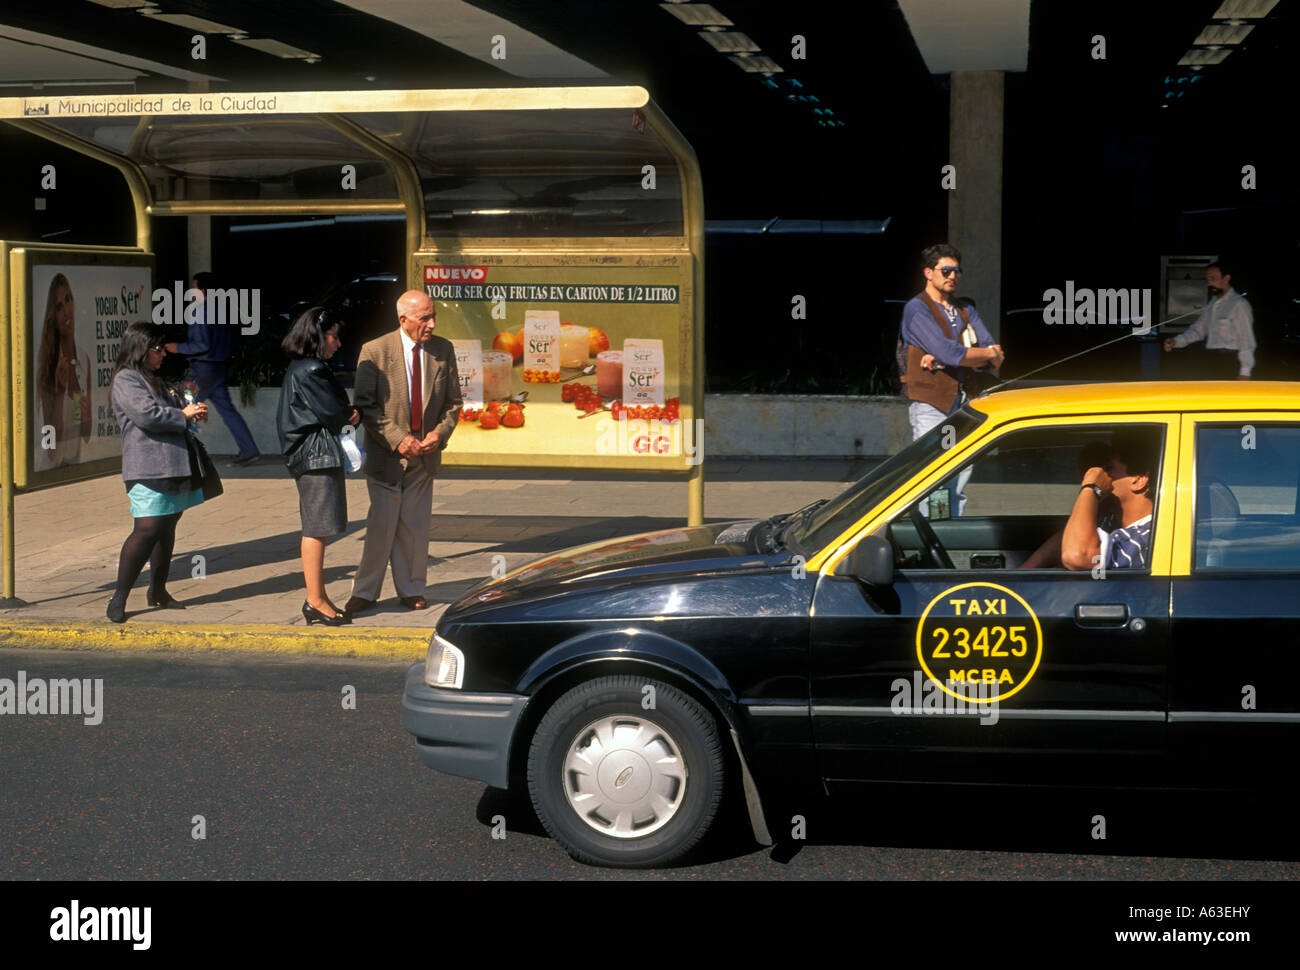 Persone l uomo e la donna in attesa presso la fermata degli autobus e taxi cab driver Buenos Aires Provincia di Buenos Aires Argentina America del Sud Foto Stock